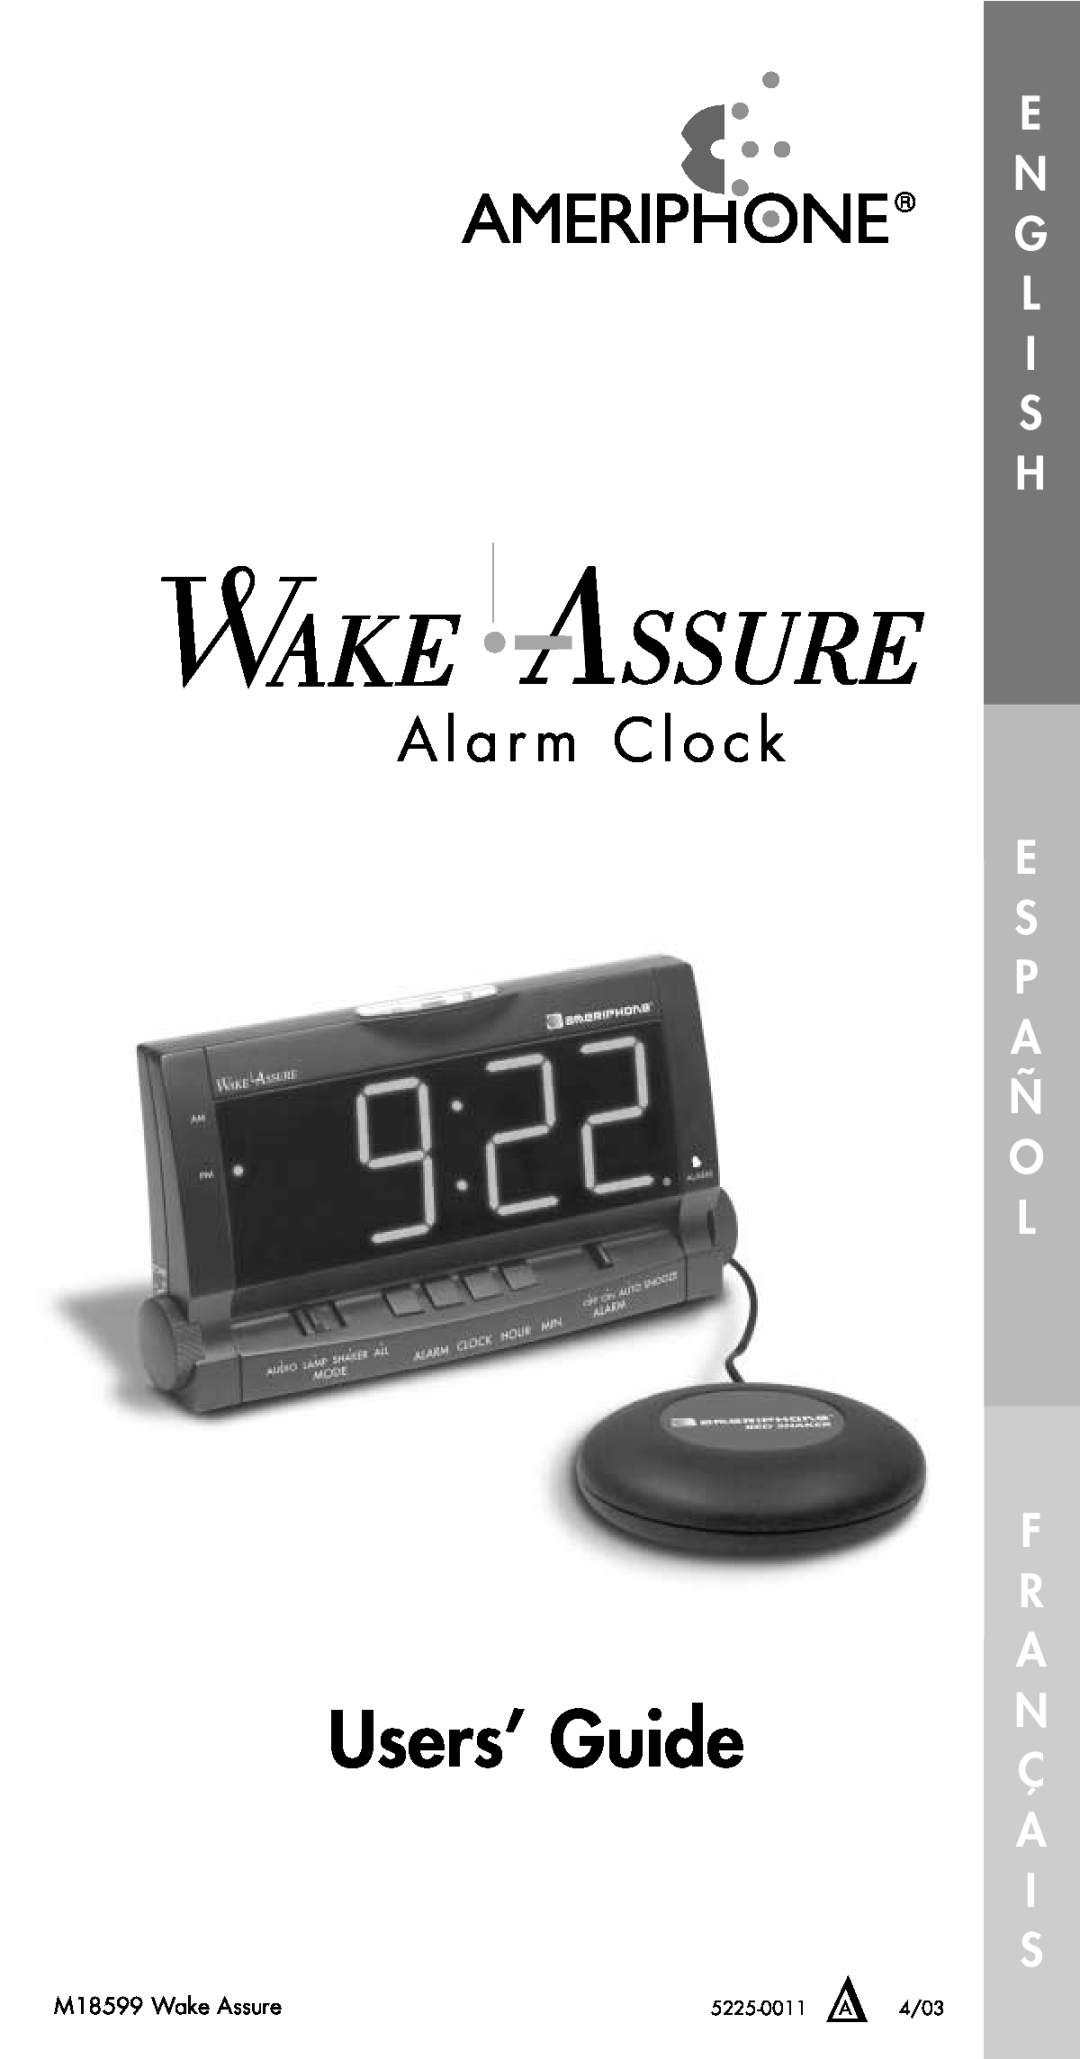 Plantronics Fire Alarm G L I S H, E S P A Ñ O L, Users’ Guide, A l a r m C l o c k, M18599 Wake Assure, 5225-0011 ∆A, 4/03 